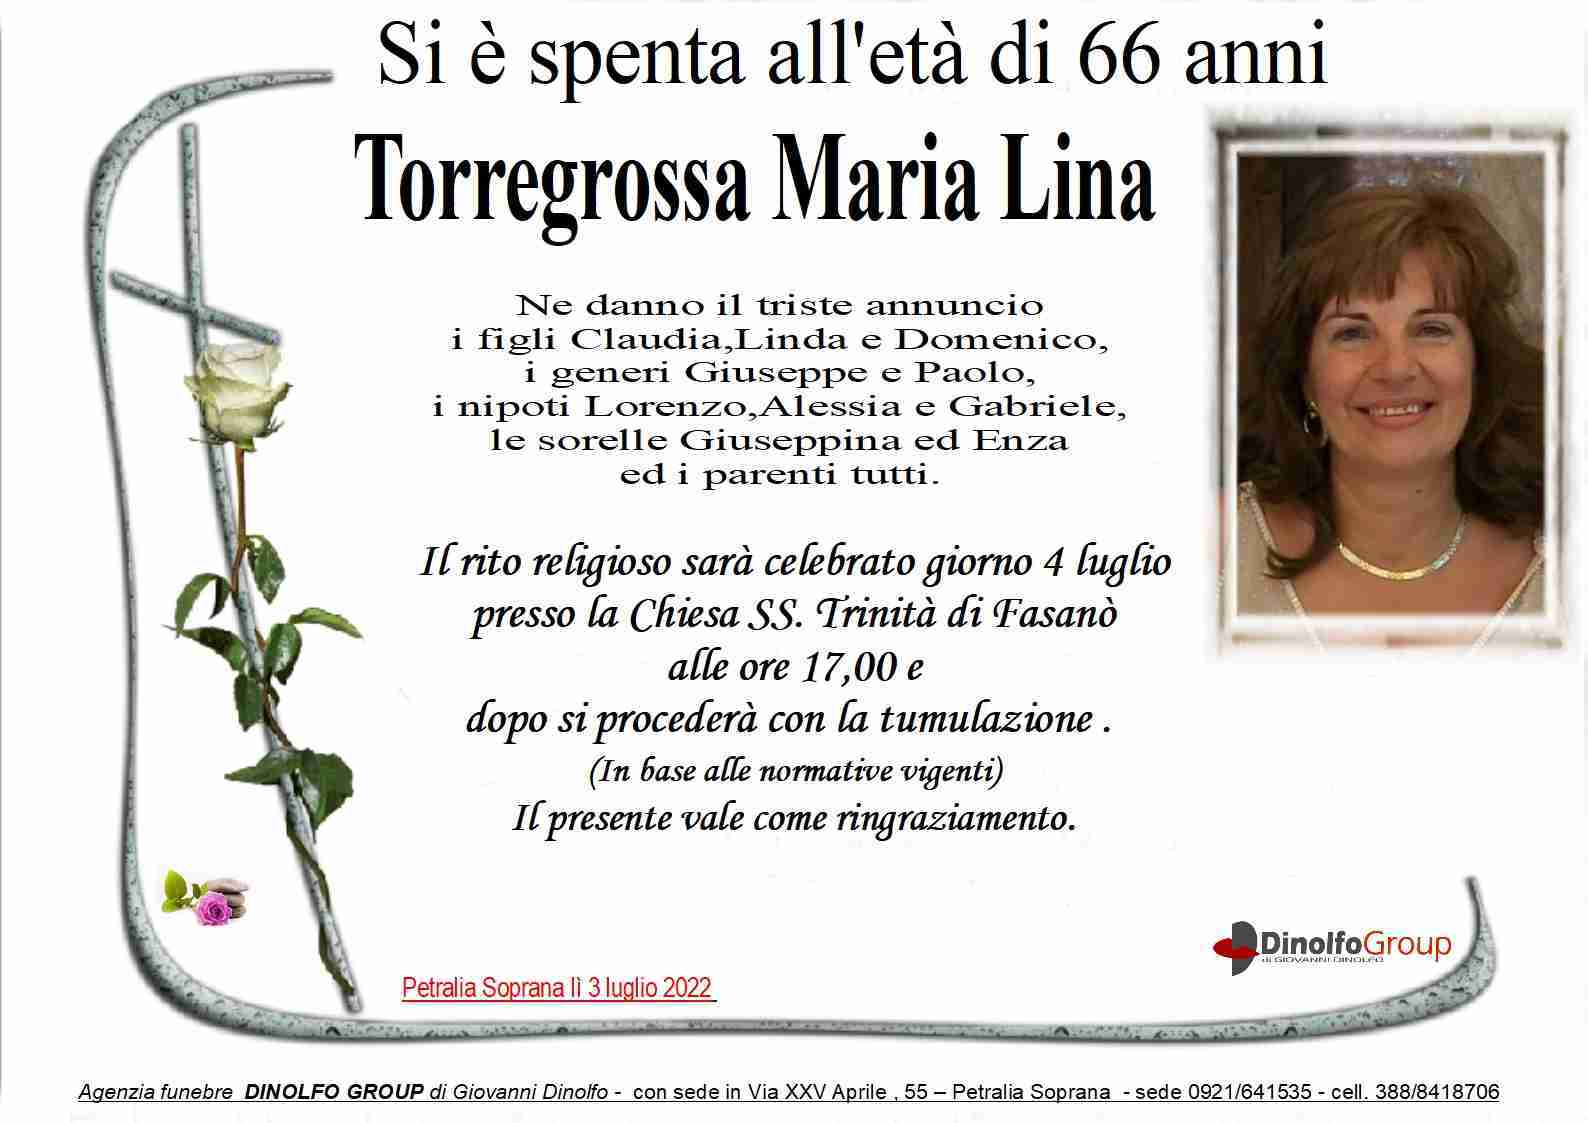 Maria Lina Torregrossa